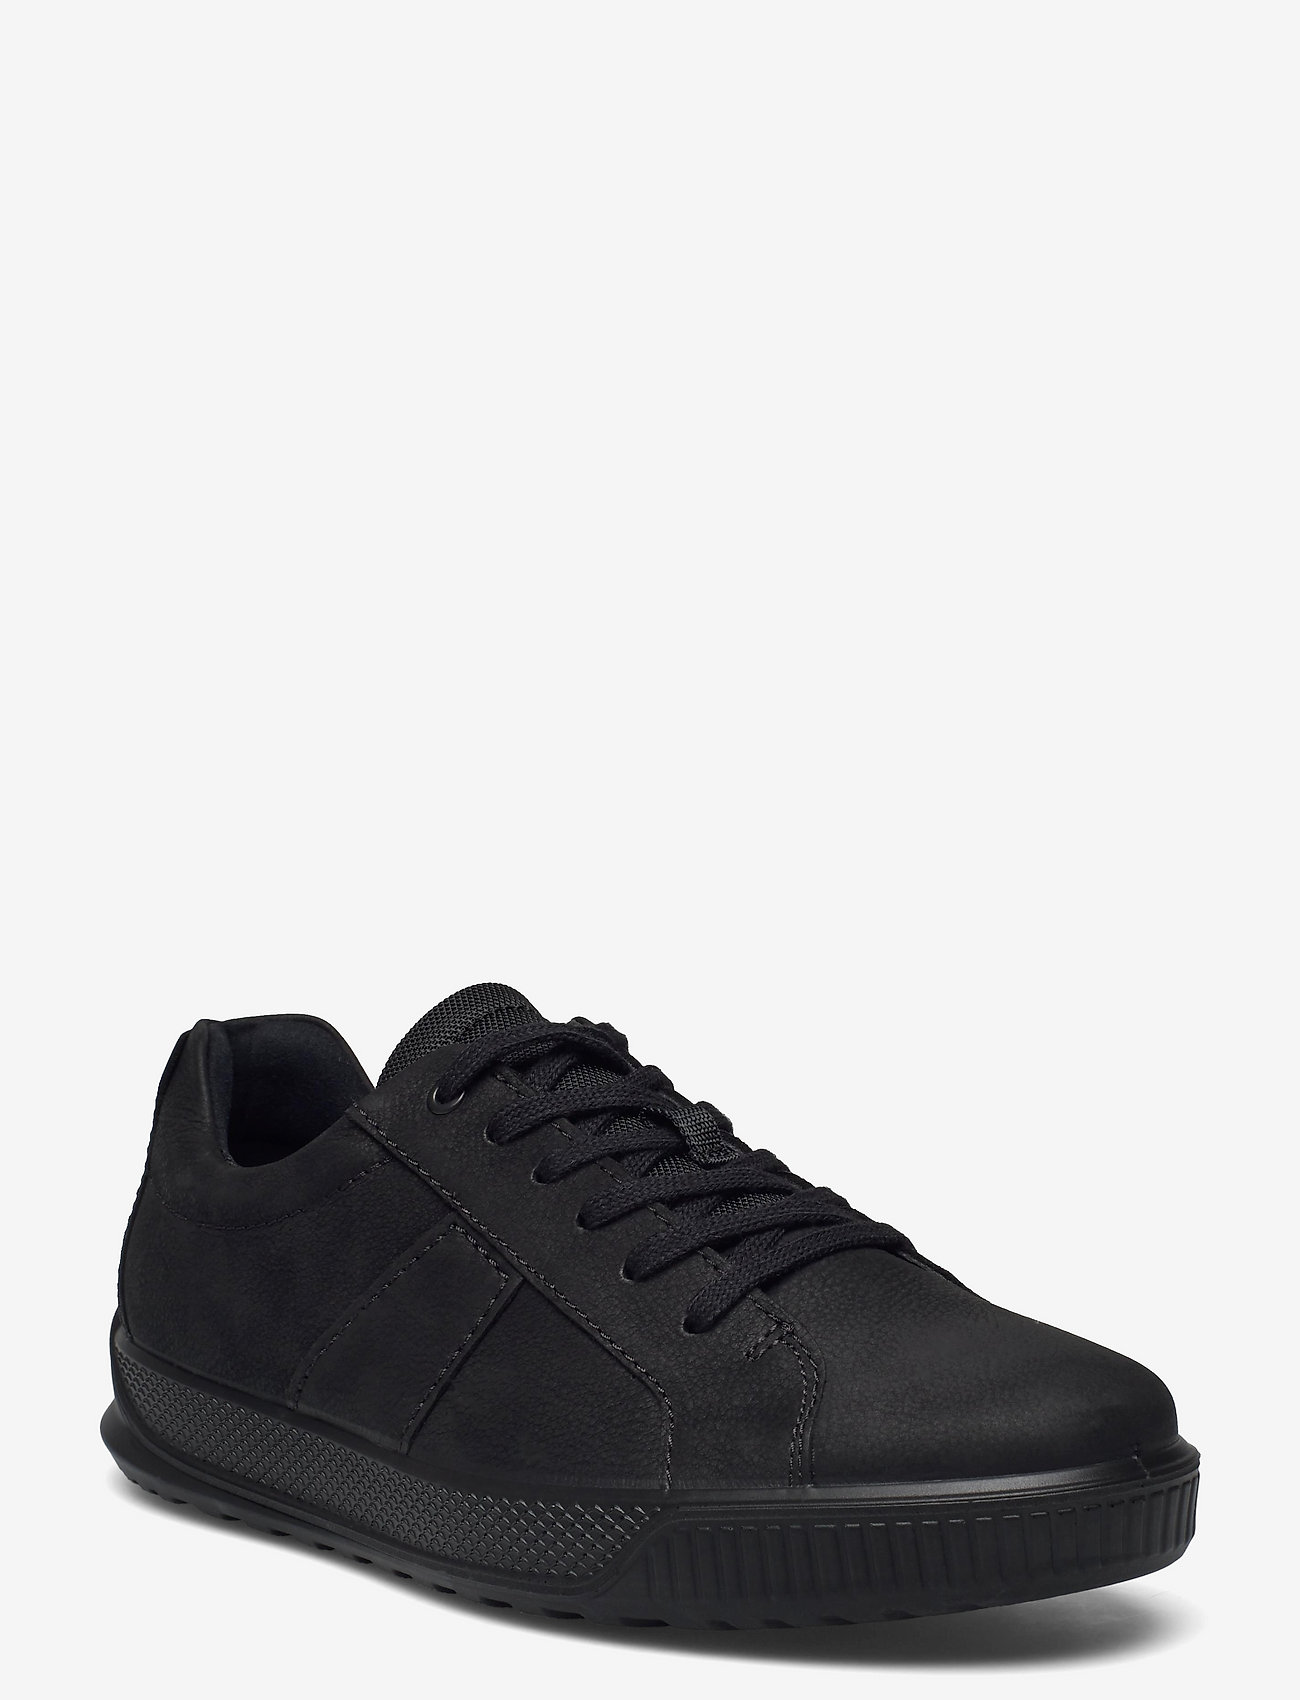 ECCO - BYWAY - laag sneakers - black/black - 0